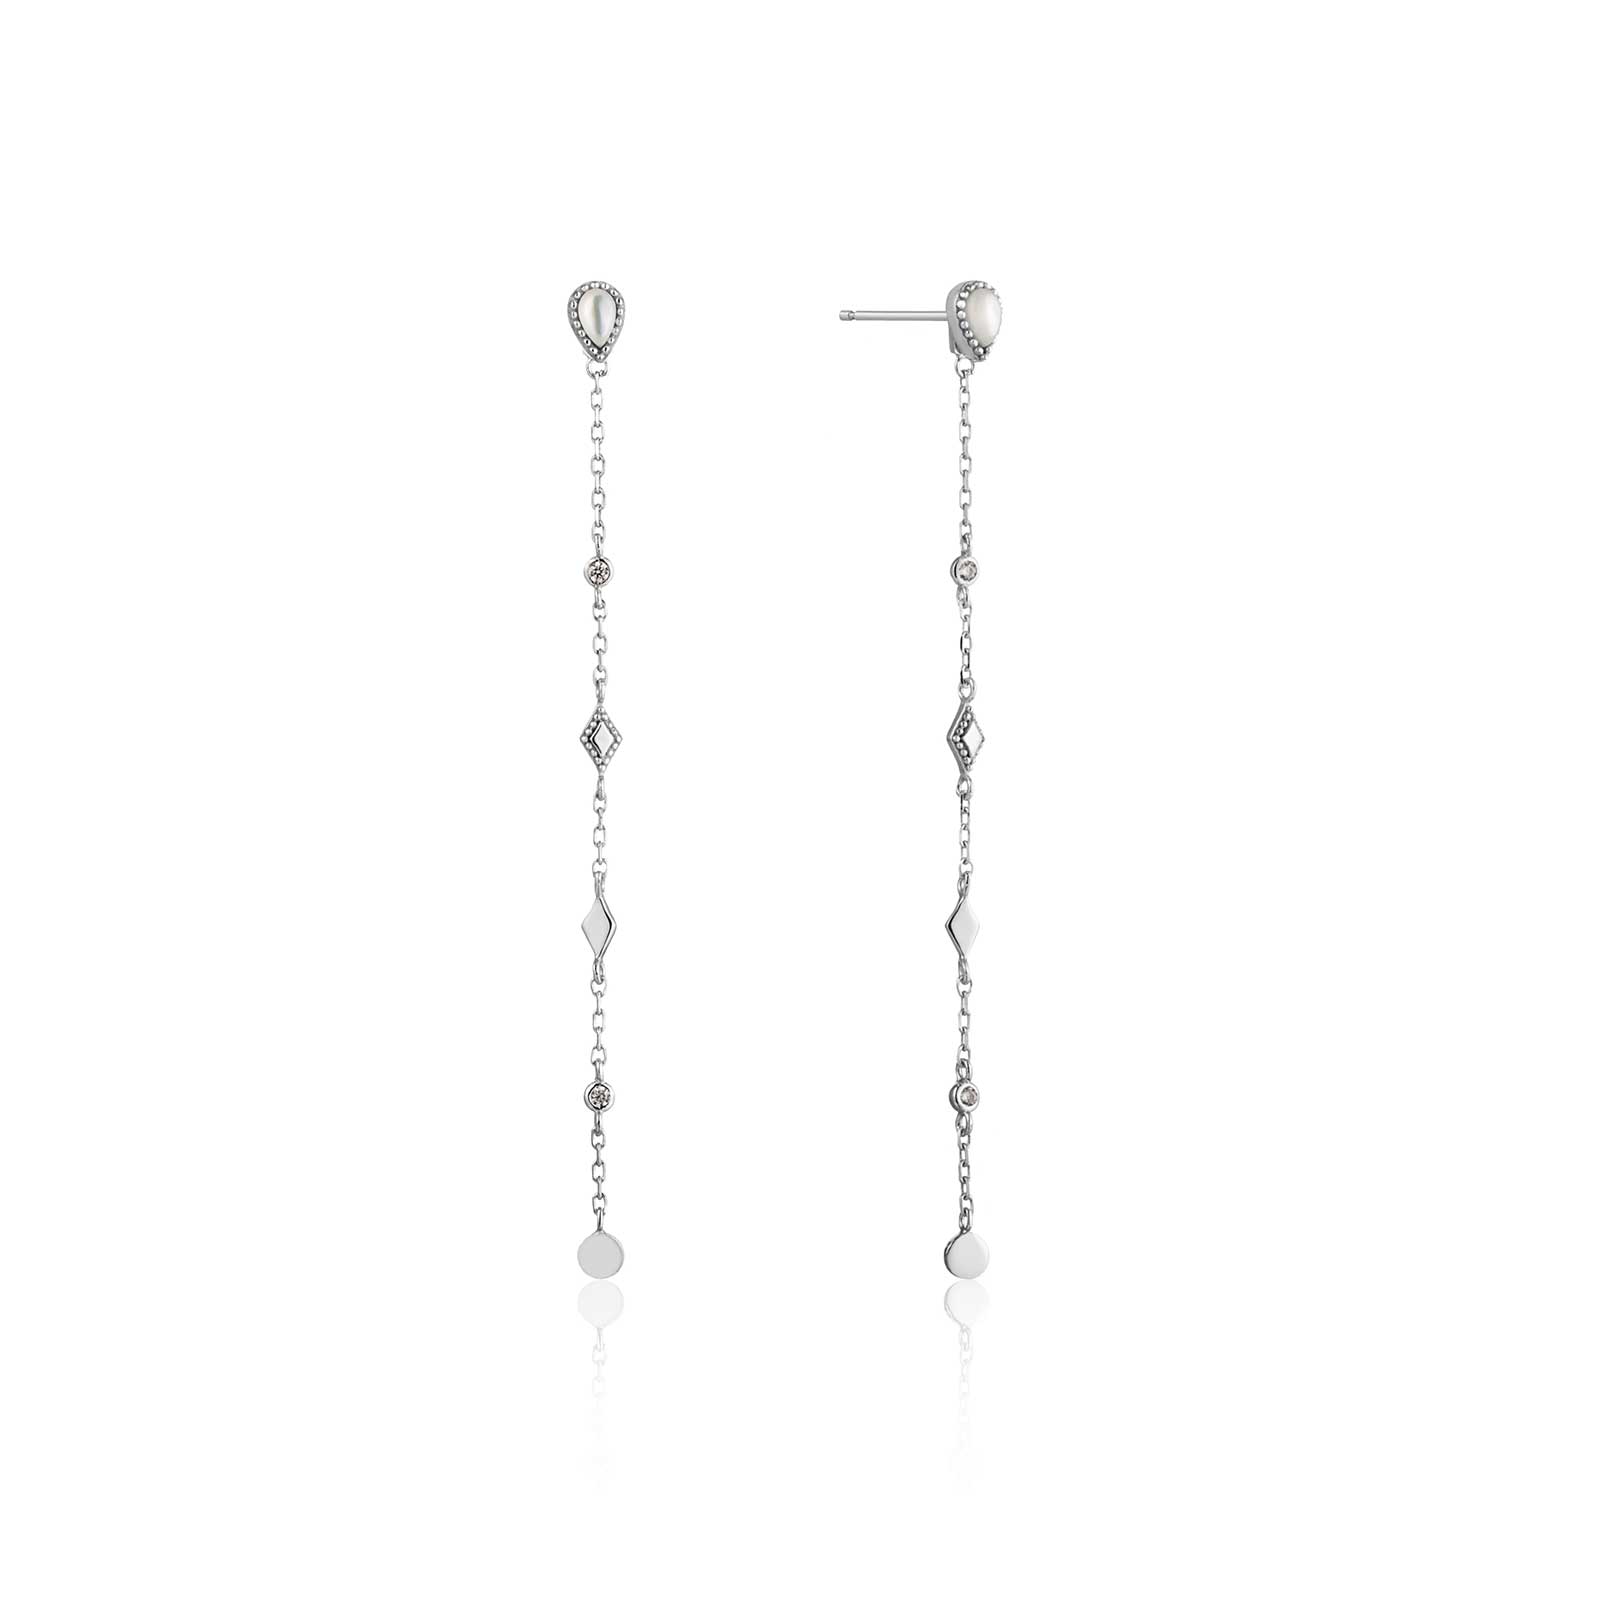 Ania Haie Dream Drop Earrings, Sterling Silver: Precious Accents, Ltd.